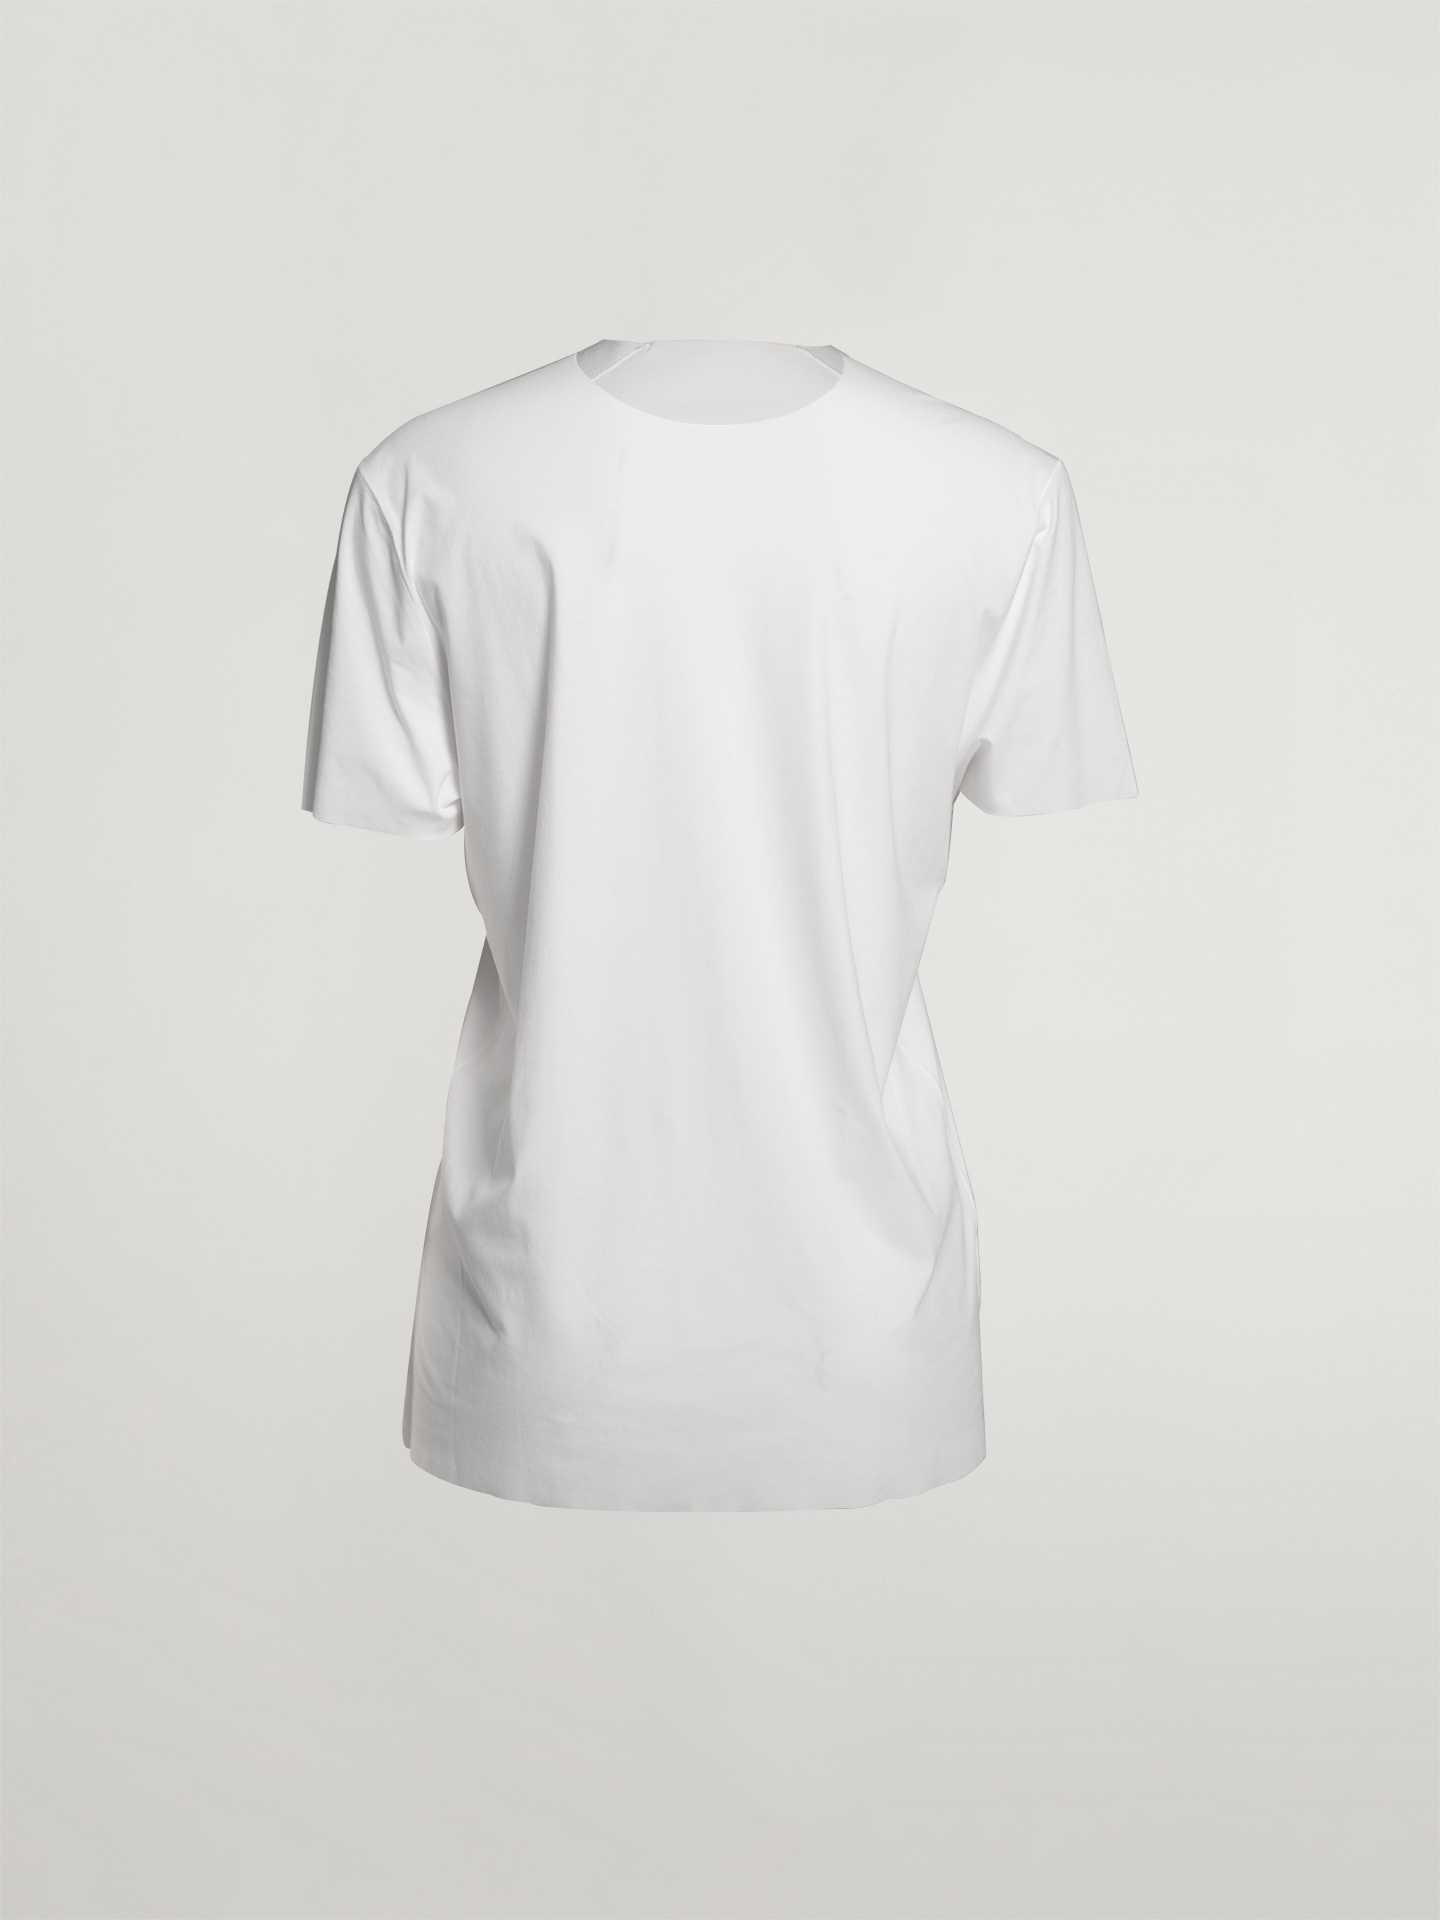 Wolford Apparel & Accessories > Clothing > Herren Men's Pure T-Shirt von Wolford